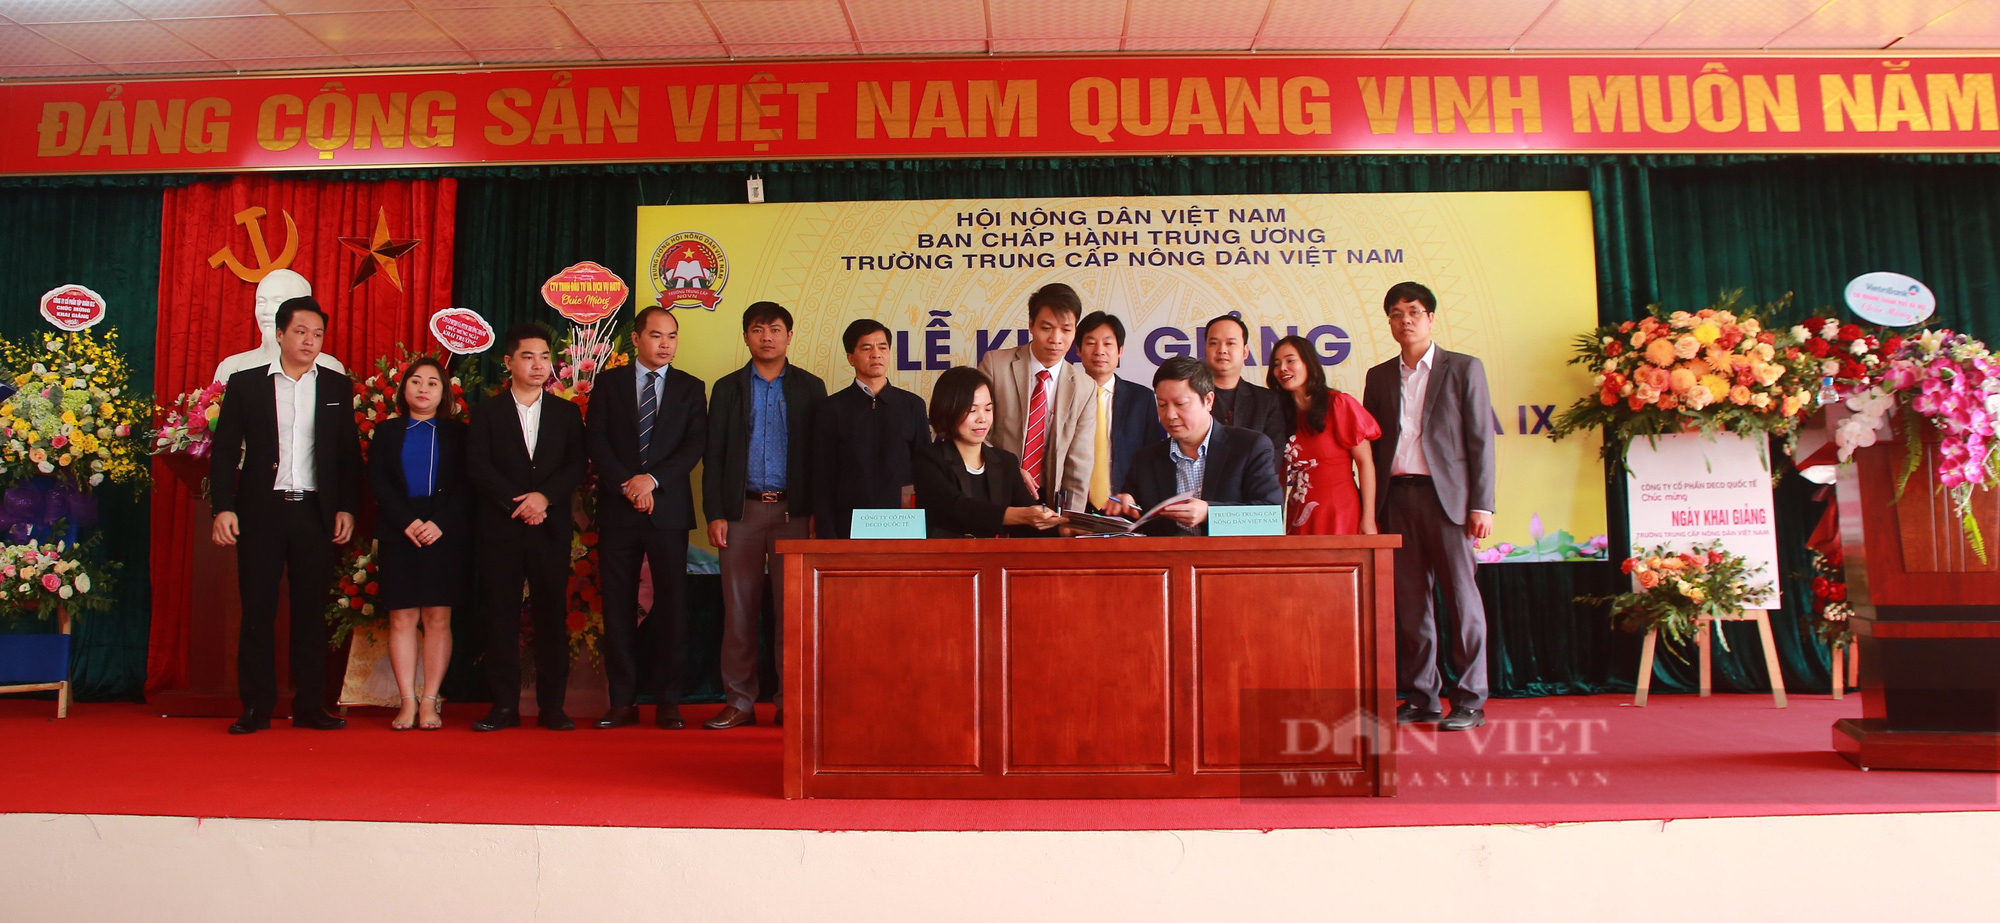 Phó Chủ tịch Trung ương Hội NDVN Nguyễn Xuân Định: Nâng cao chất lượng đào tạo nghề cho lao động nông thôn thời 4.0 - Ảnh 4.